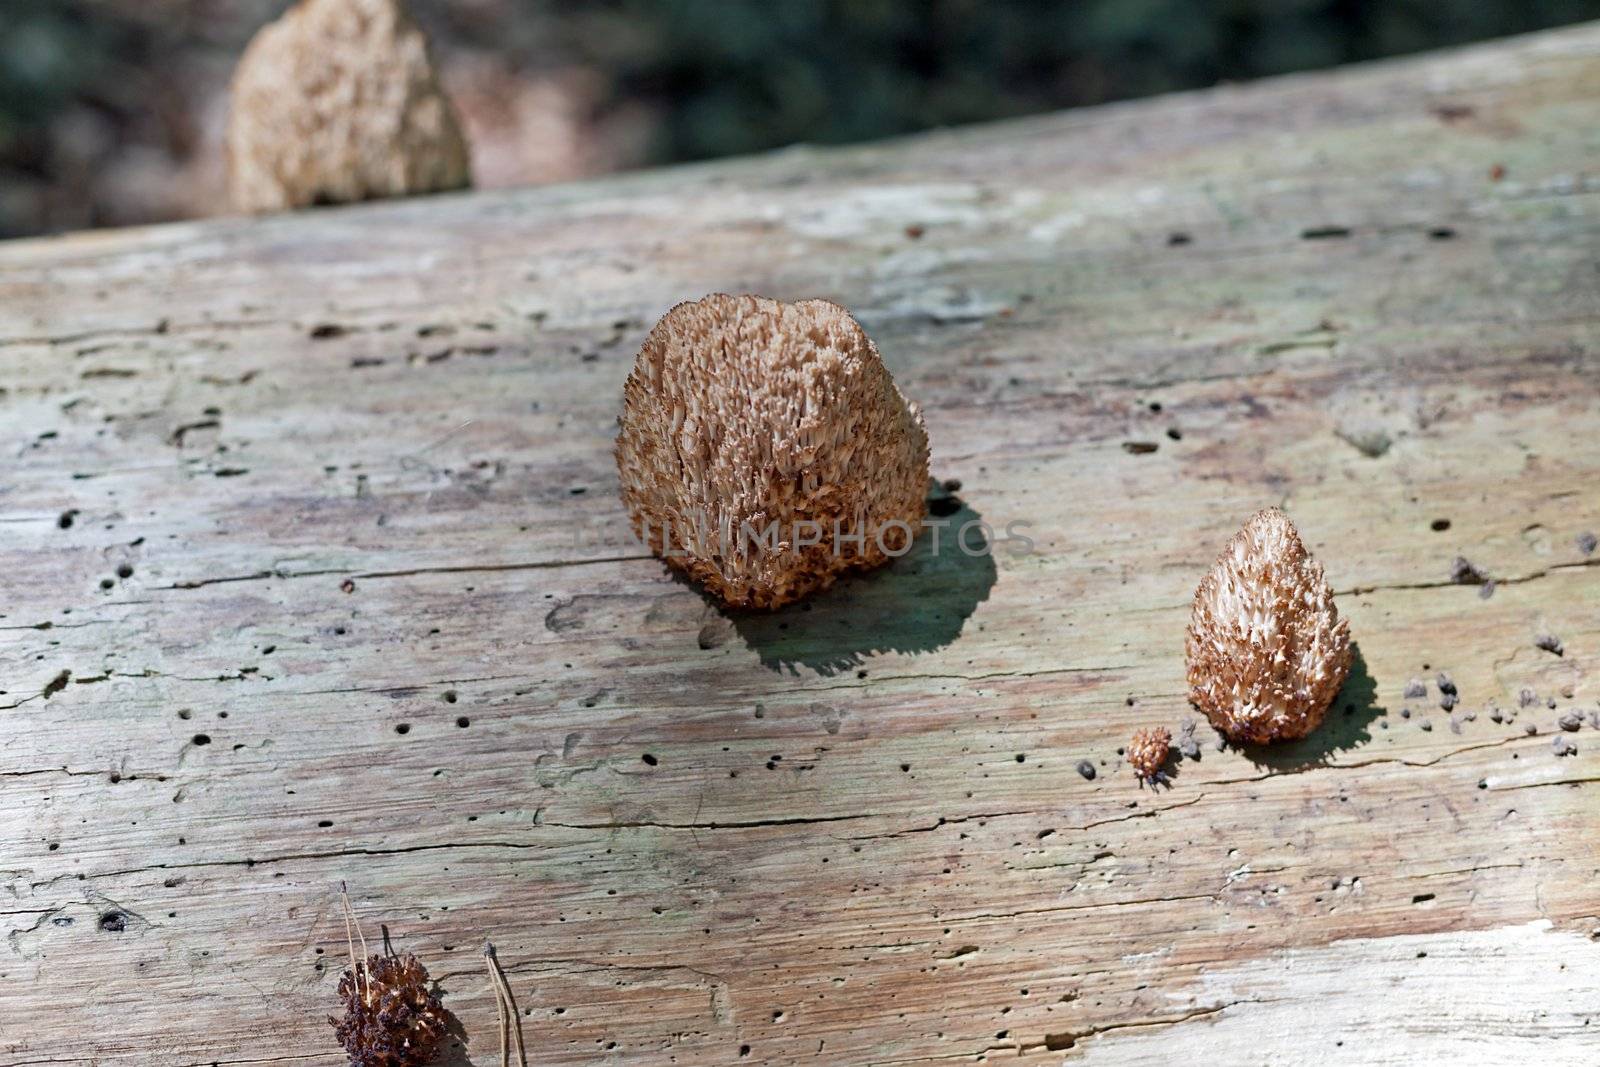 Strange-looking mushrooms on a tree log